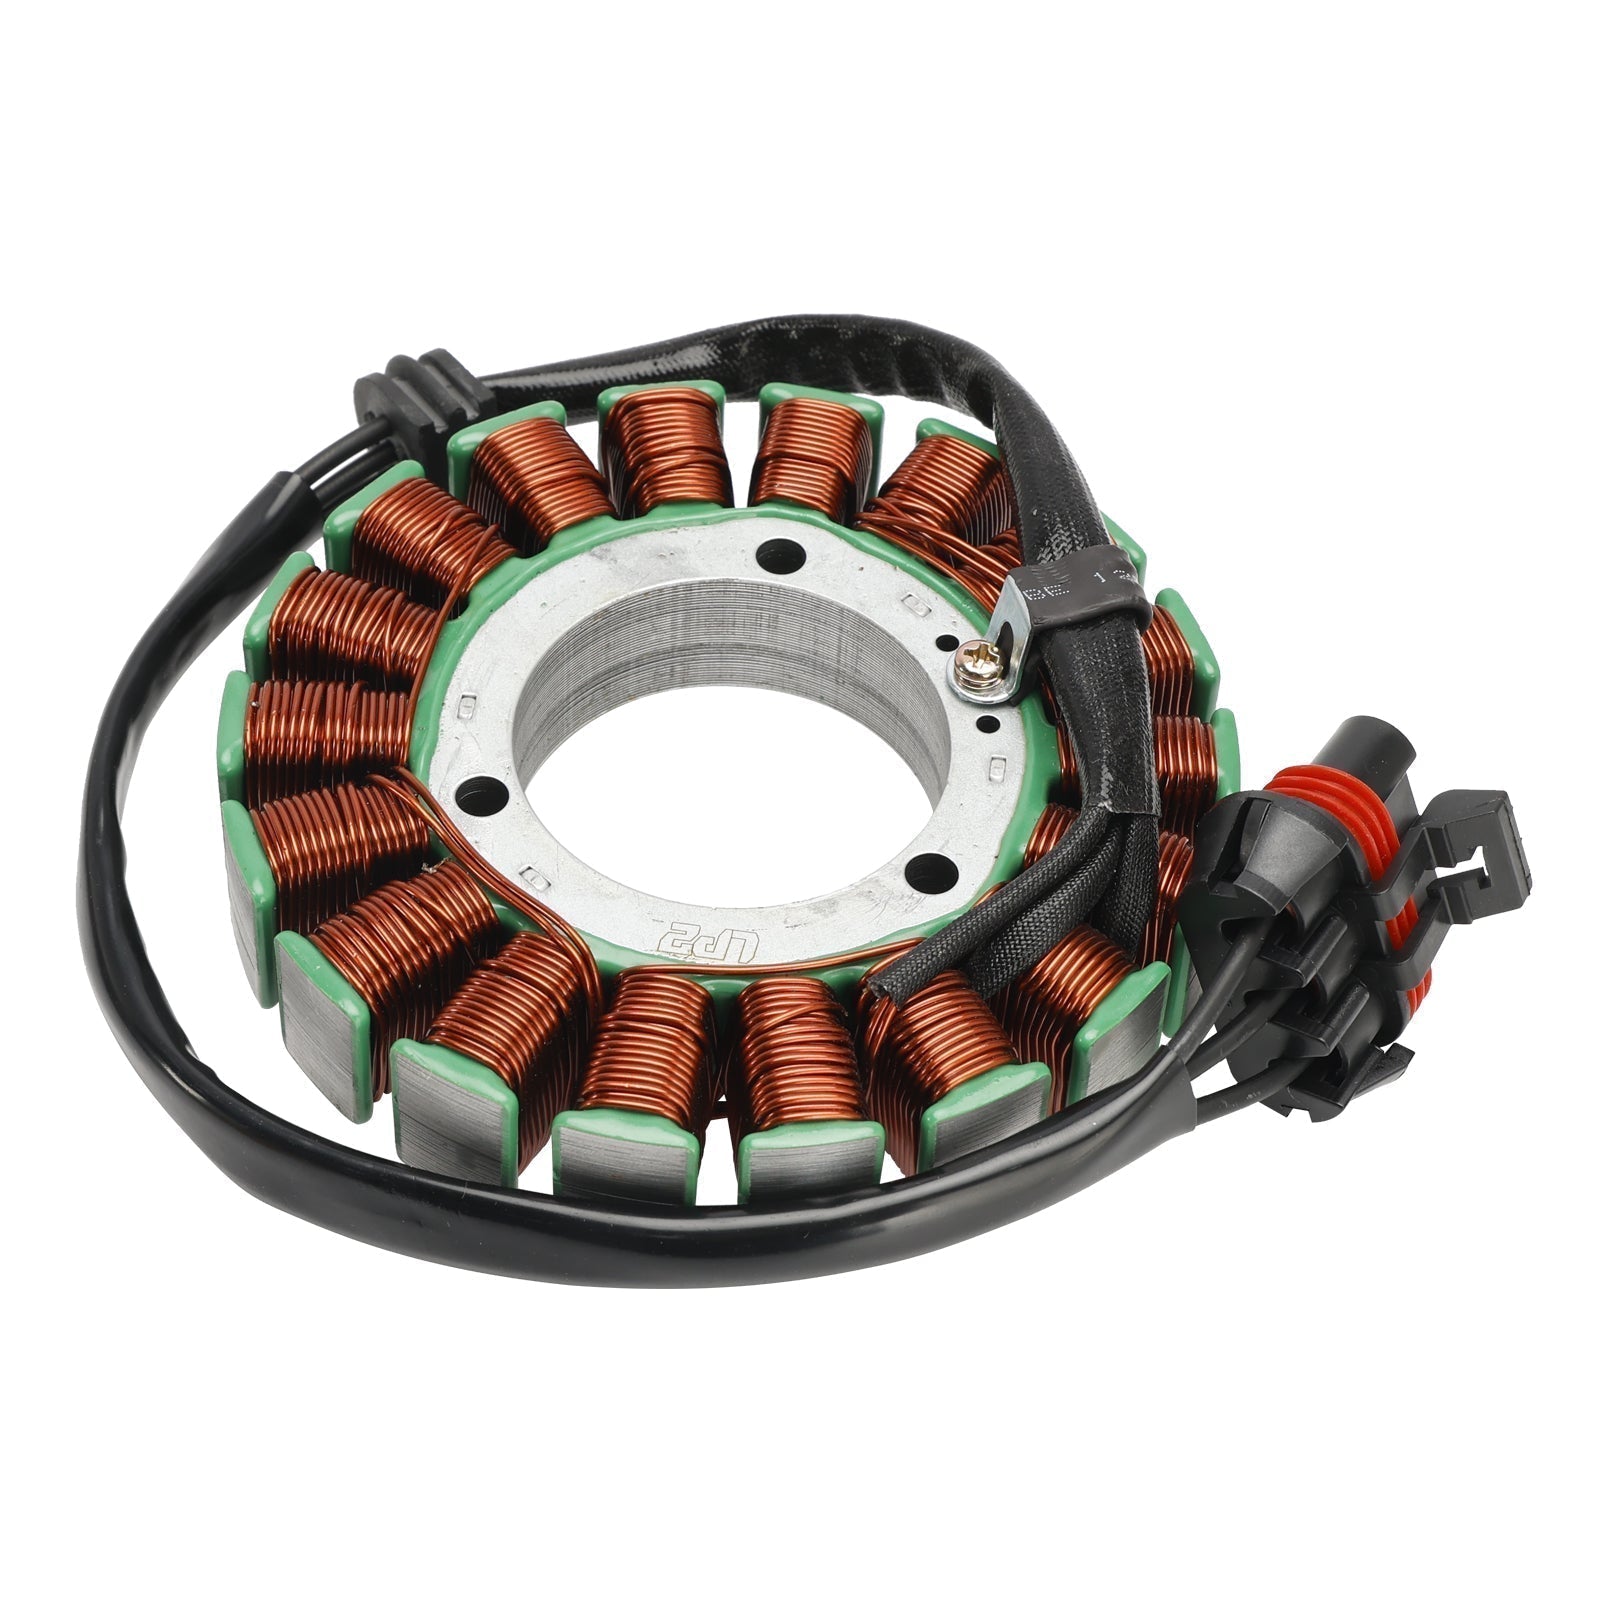 Stator de bobine magnétique Polaris RZR 4 900 + régulateur de tension + joint Assy 2014-2018 4013970